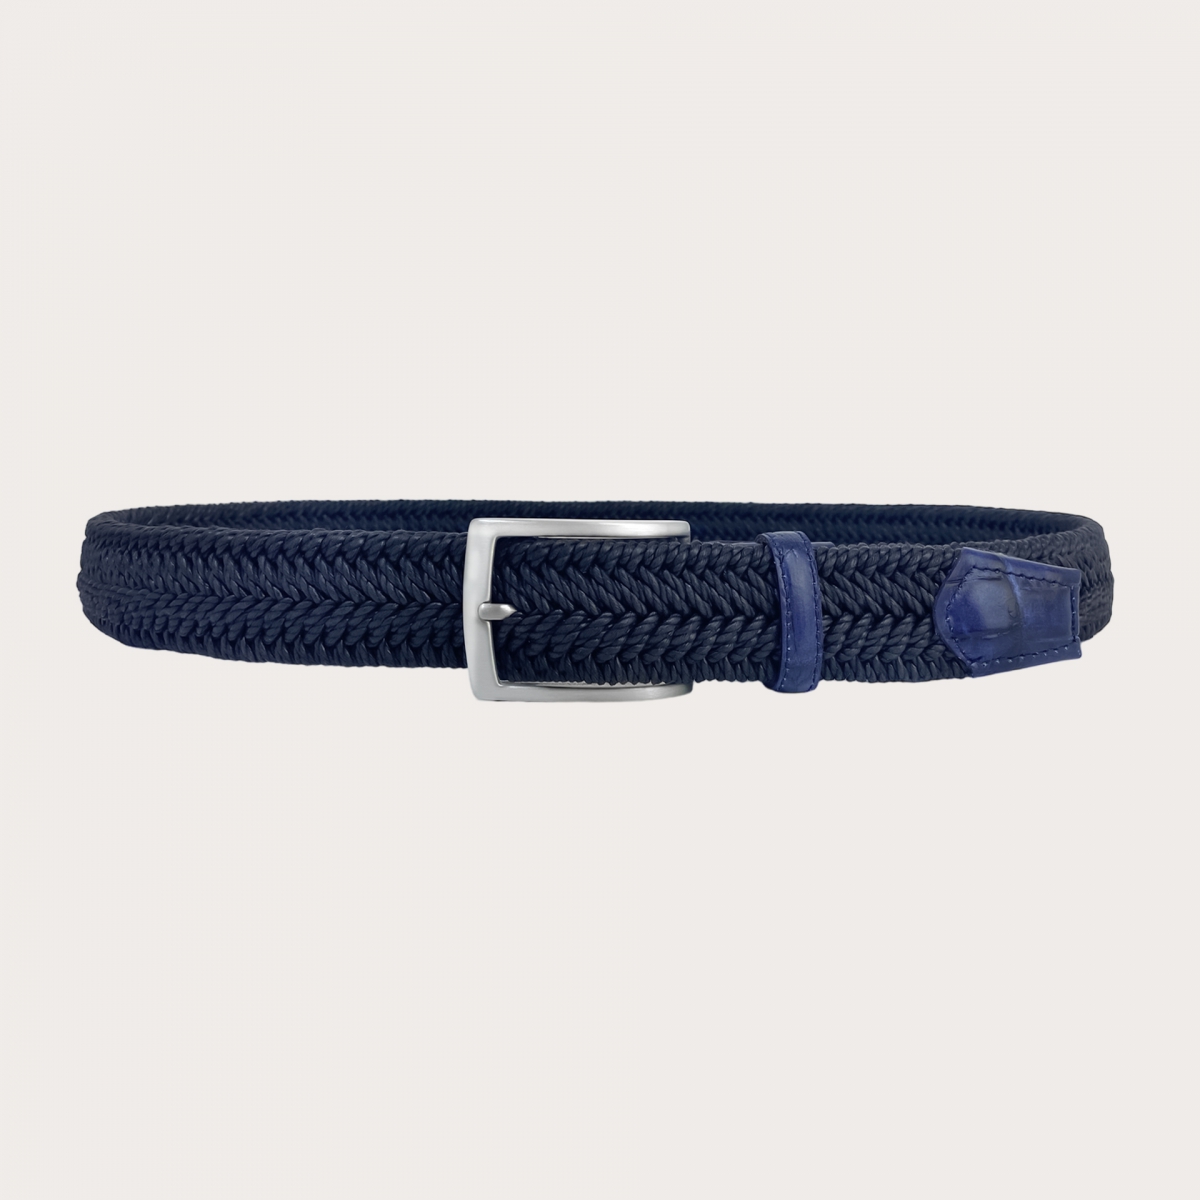 BRUCLE Cinturón elástico trenzado azul marino